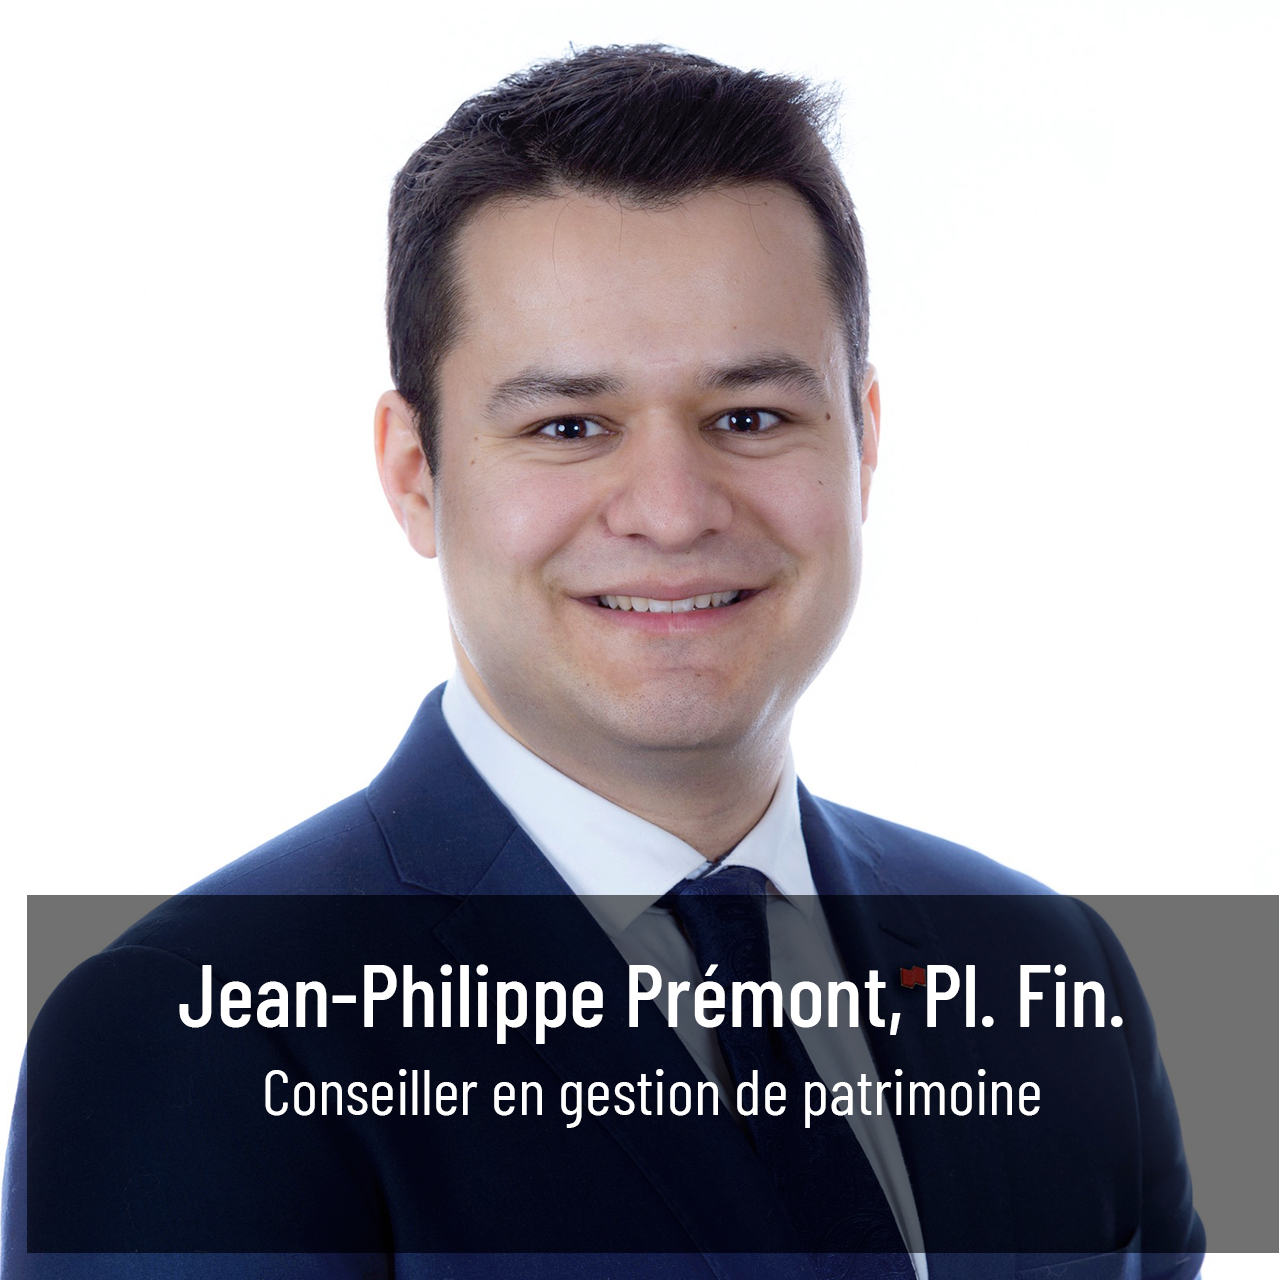 Jean-Philippe Premont